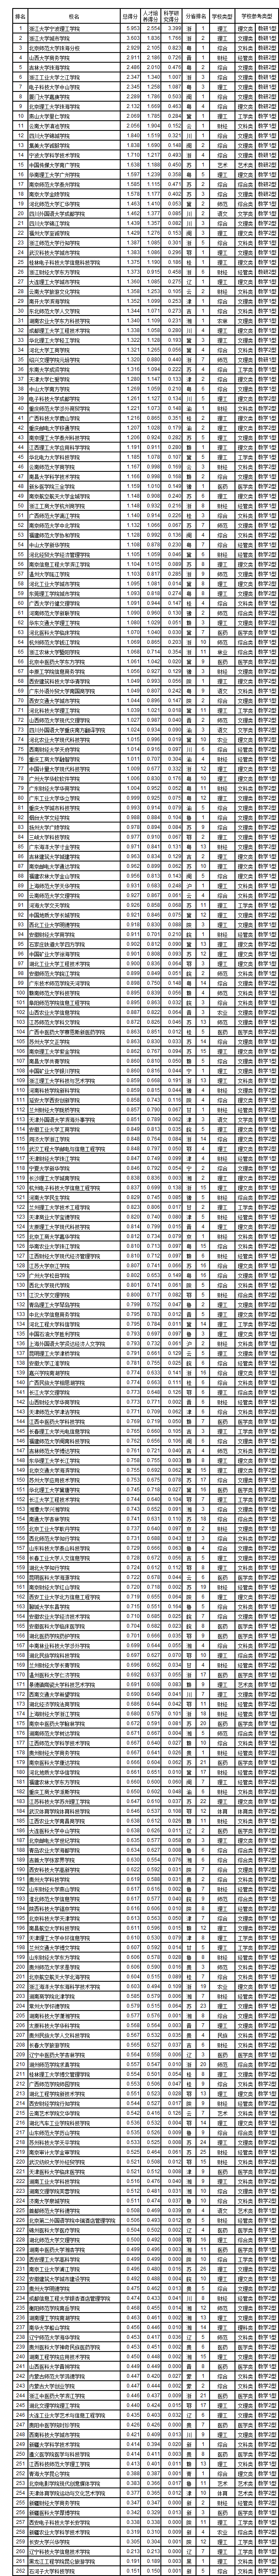 2018-2019中国独立学院排名300强（武书连版）